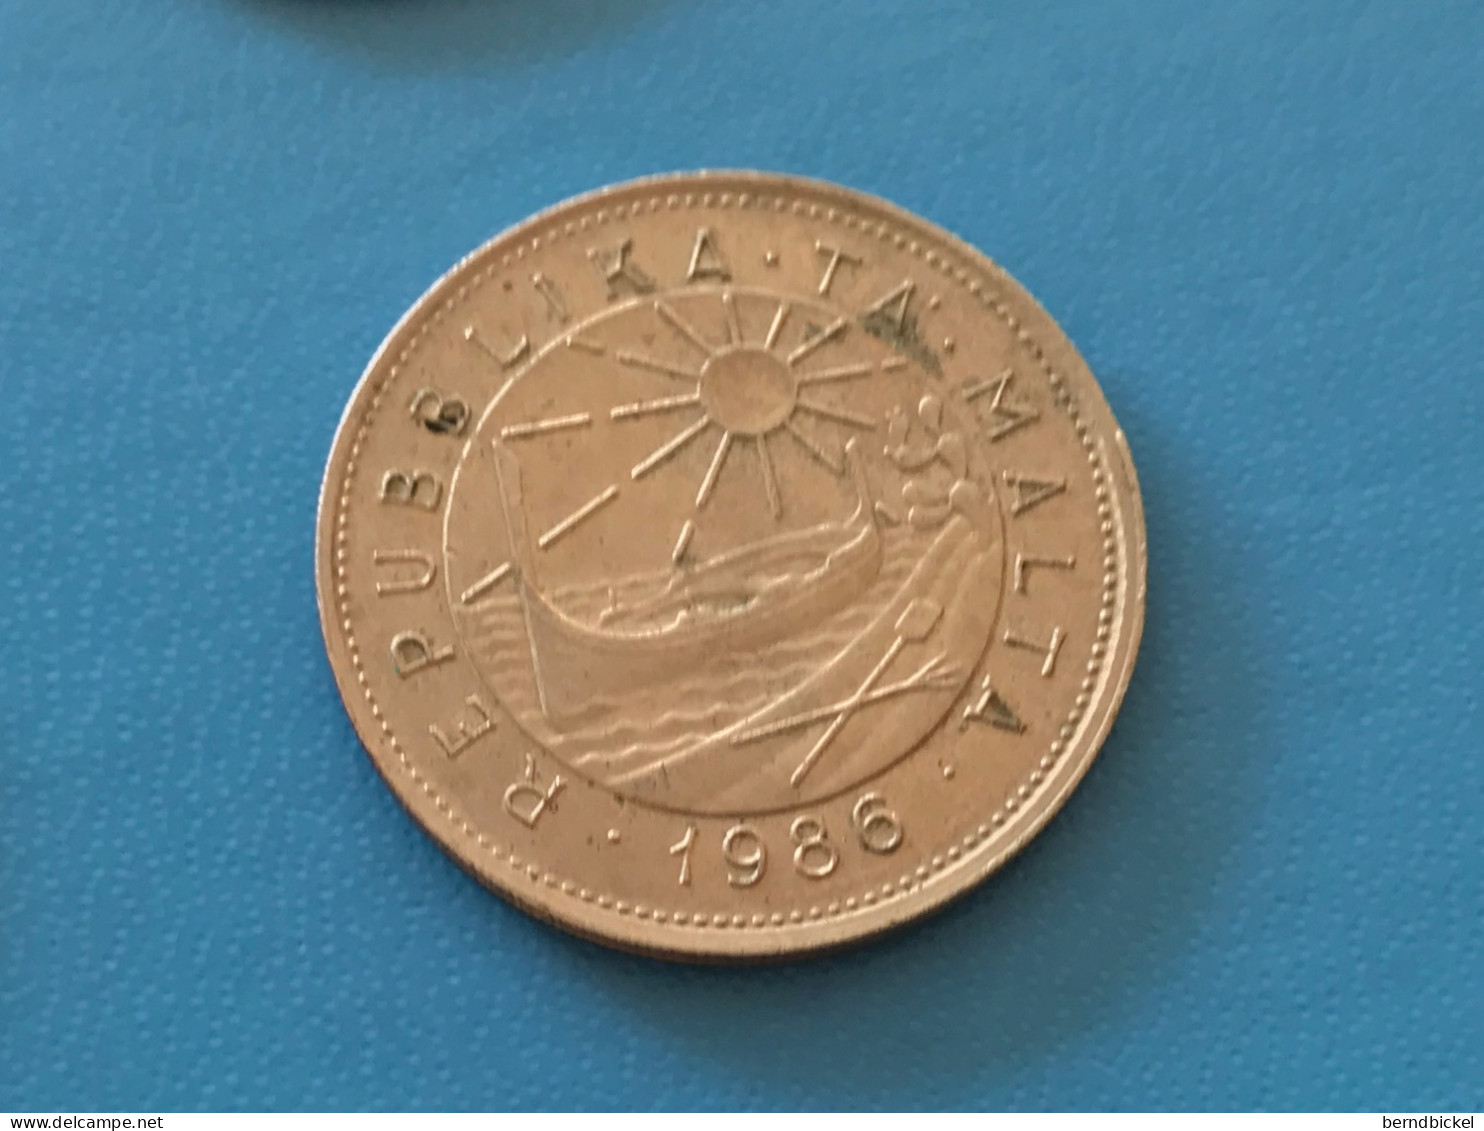 Münze Münzen Umlaufmünze Malta 25 Cent 1986 - Malte